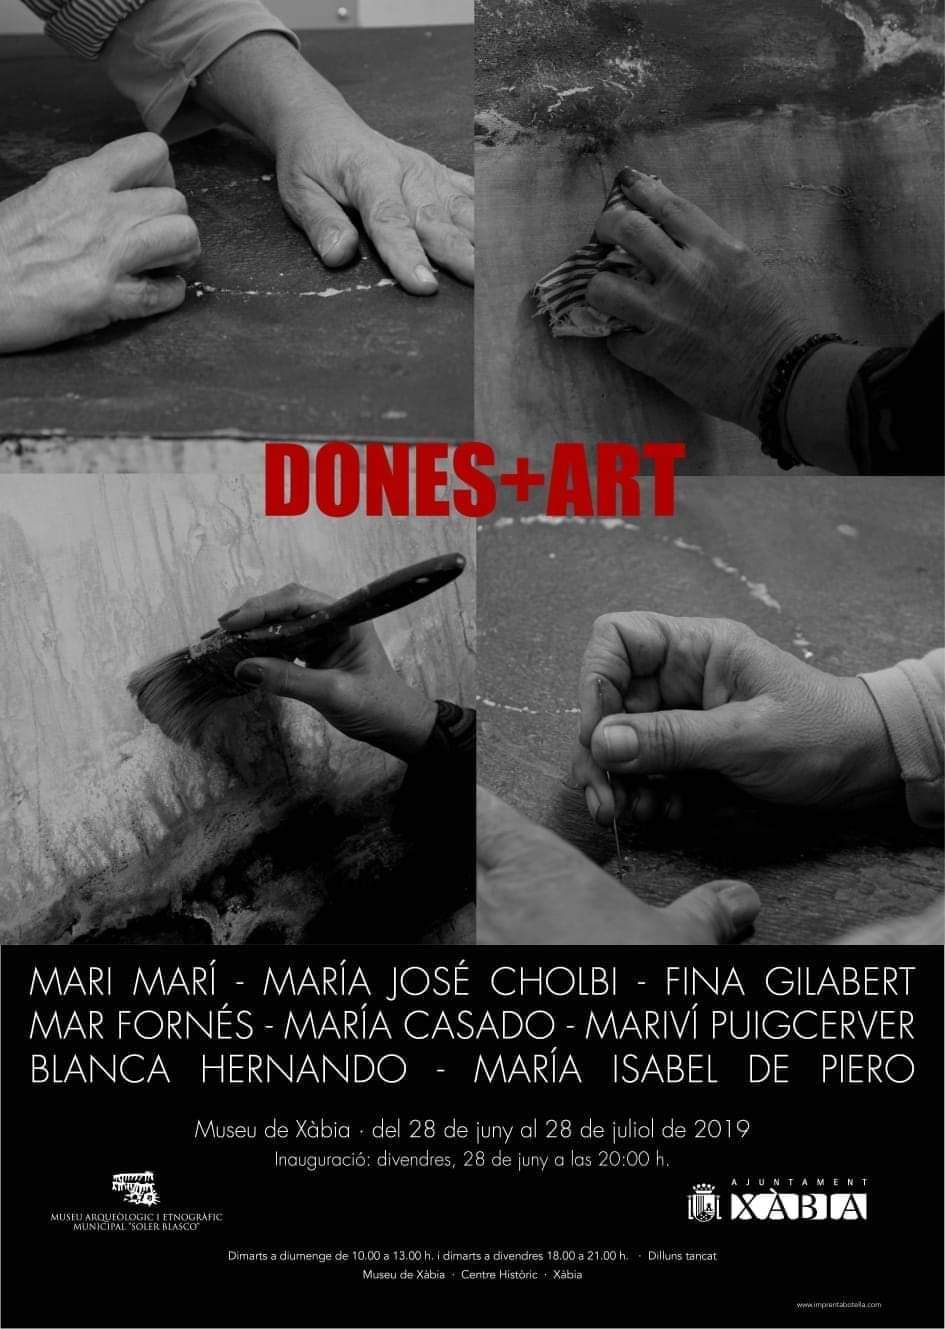 Dones+art